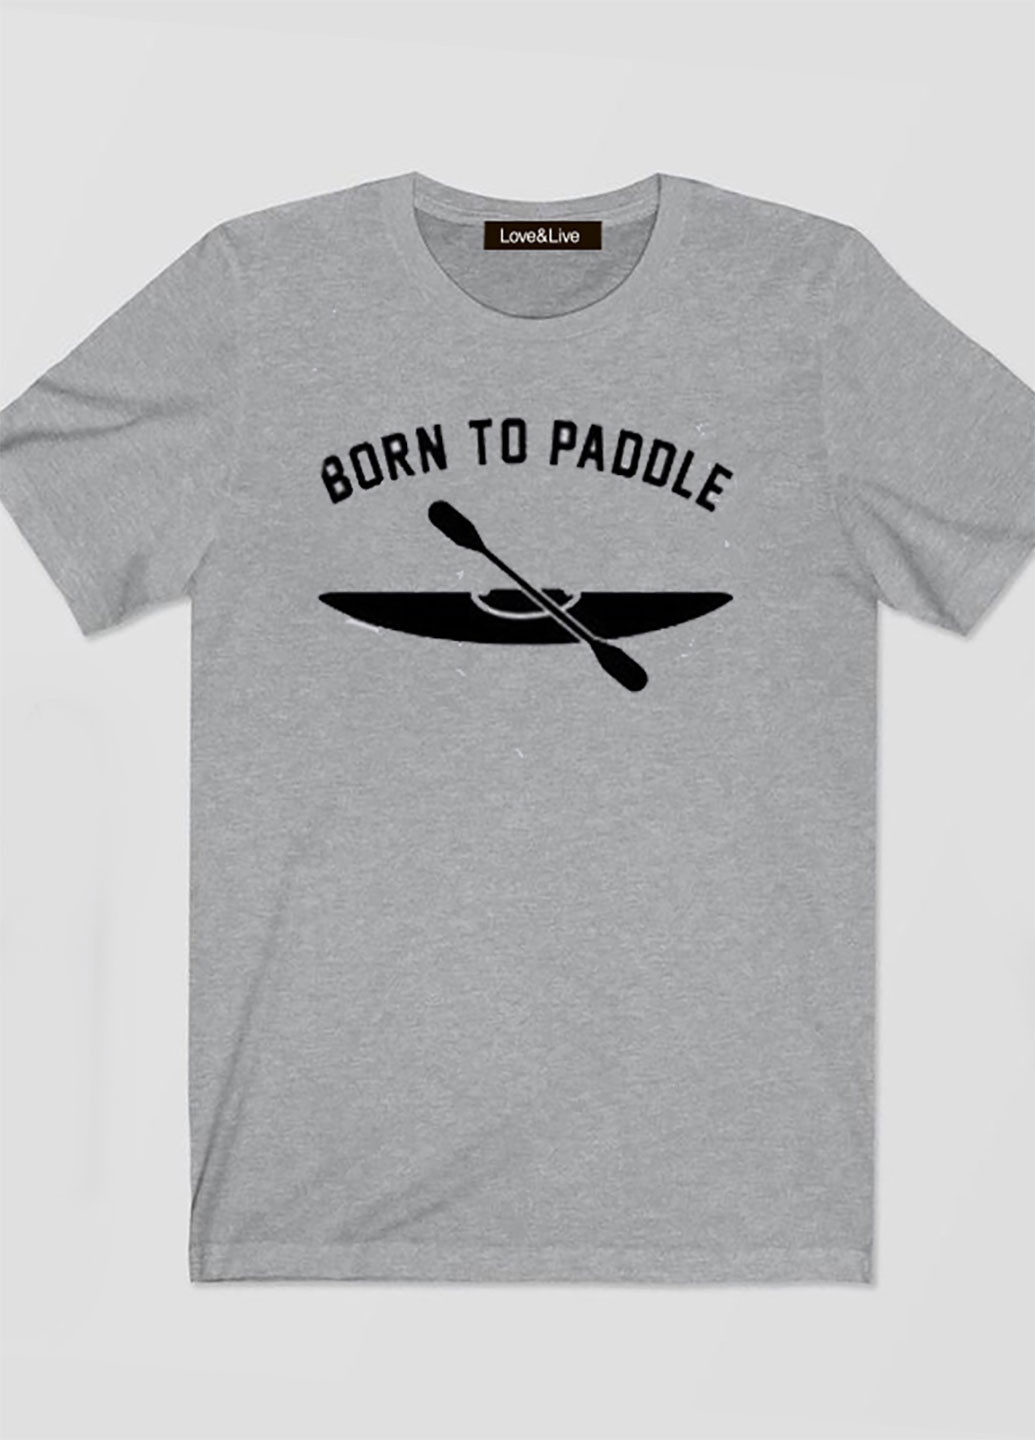 Серая футболка мужская серая born to paddle Love&Live